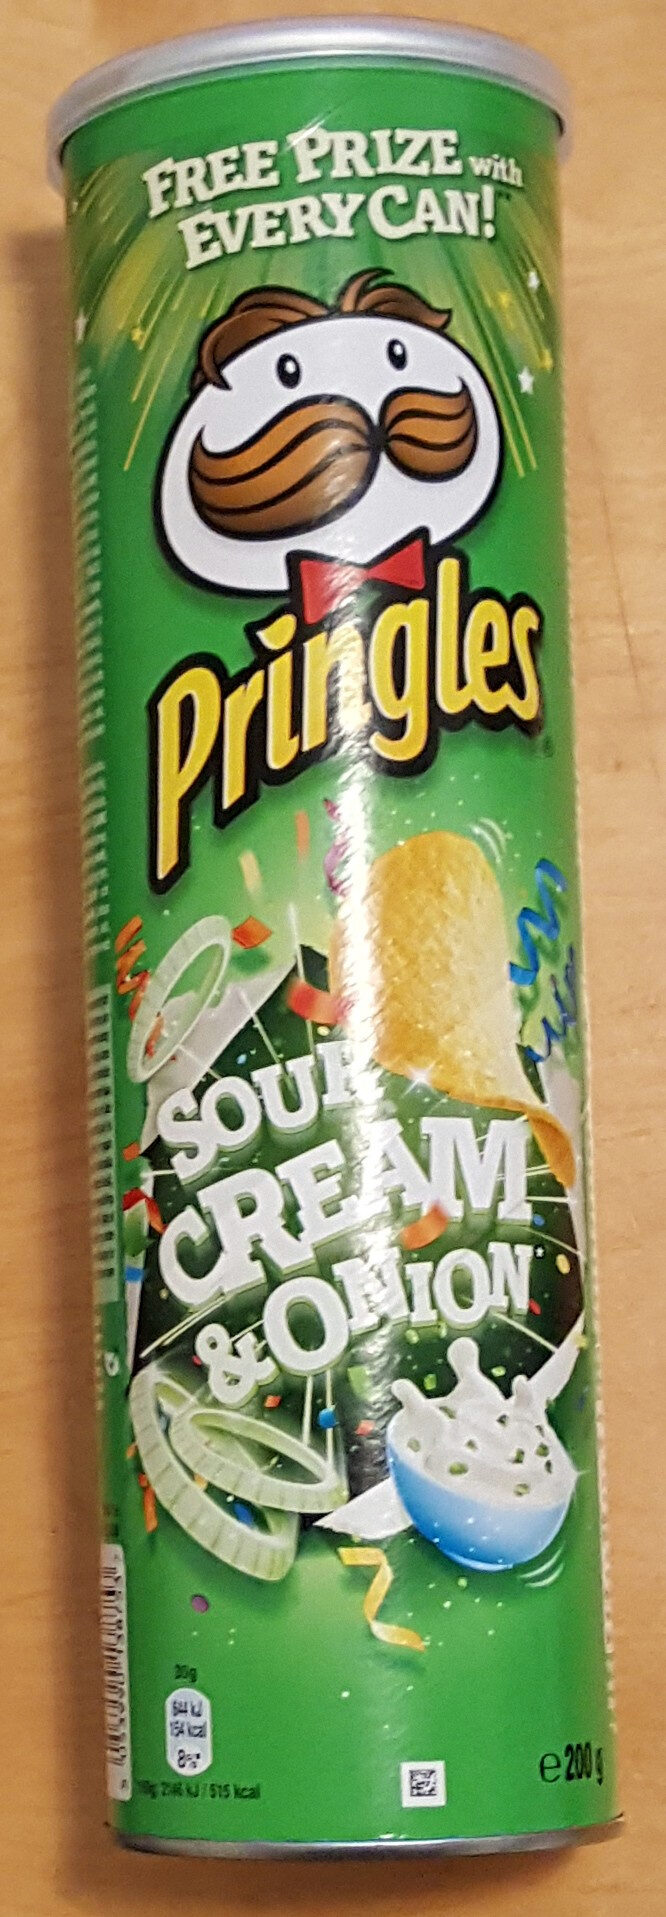 Sour Cream & Onion - Product - en